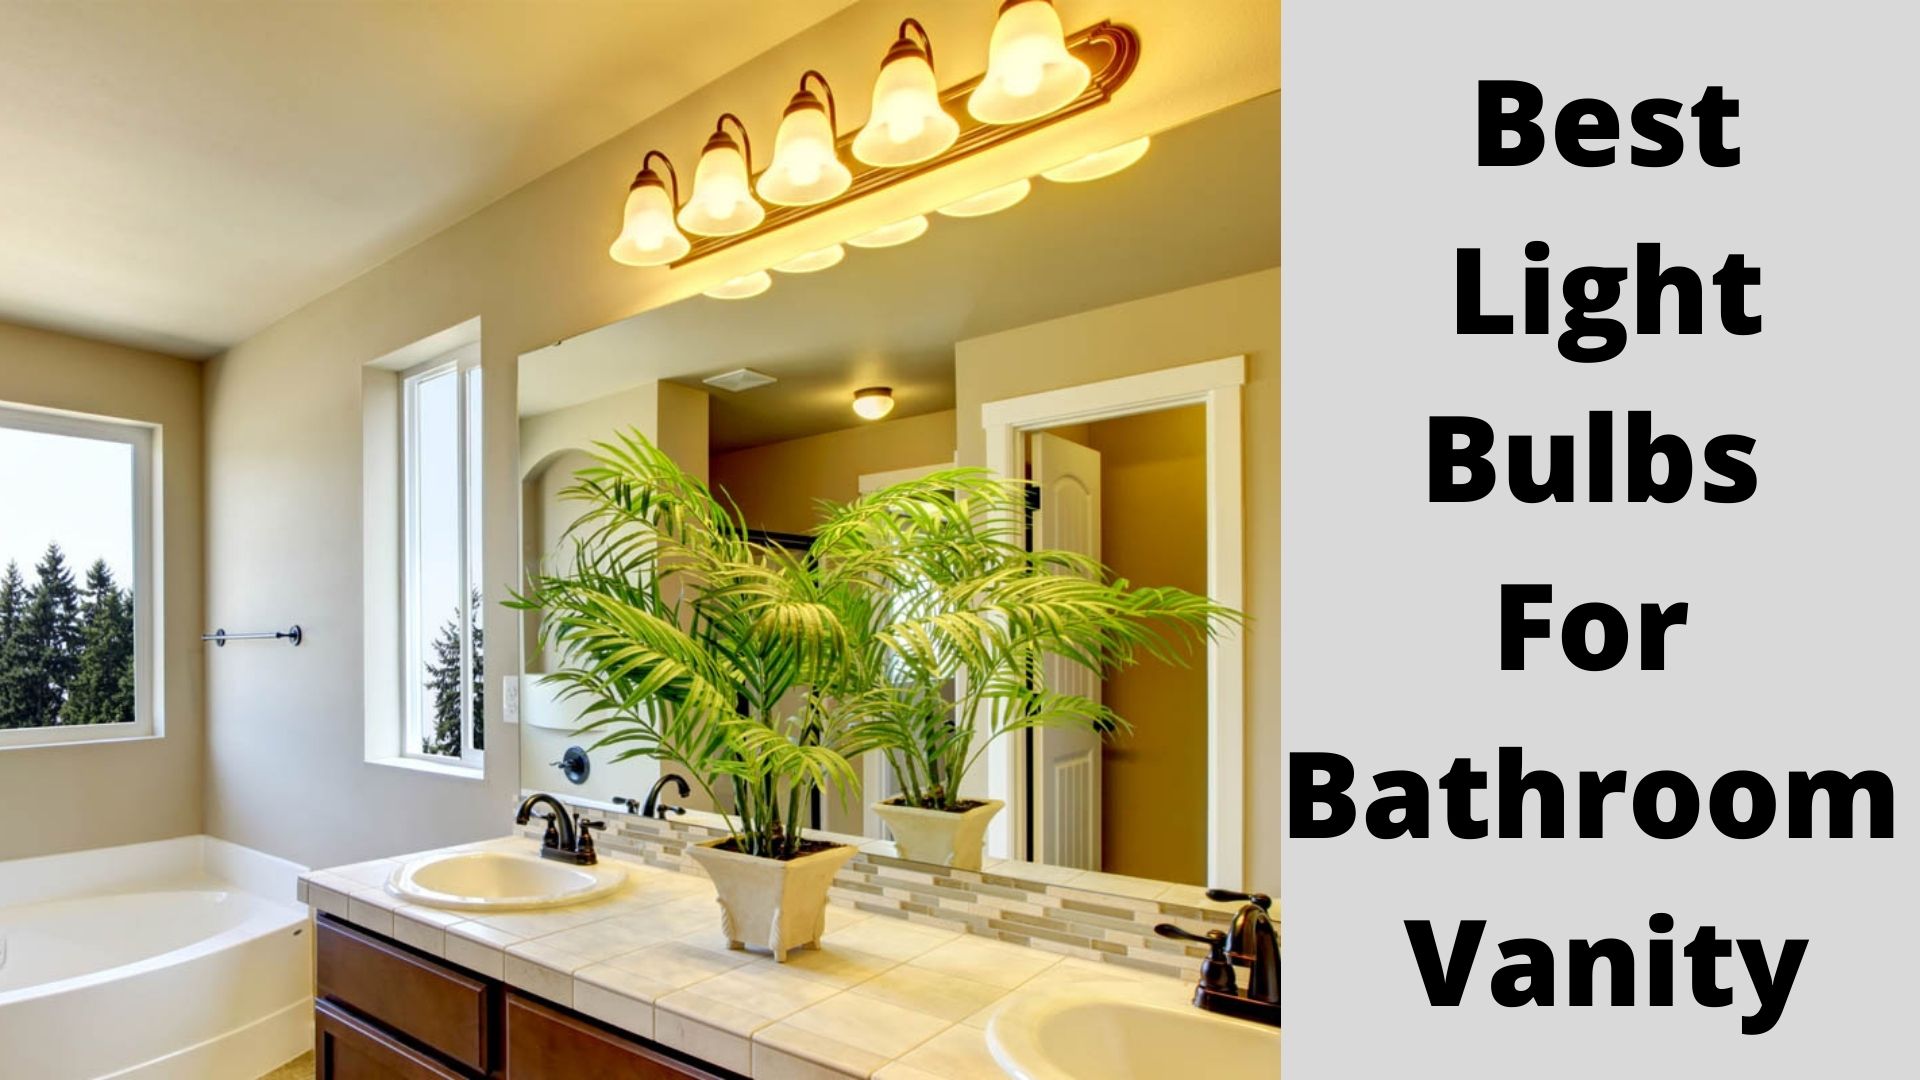 Best Light Bulbs For Bathroom Vanity